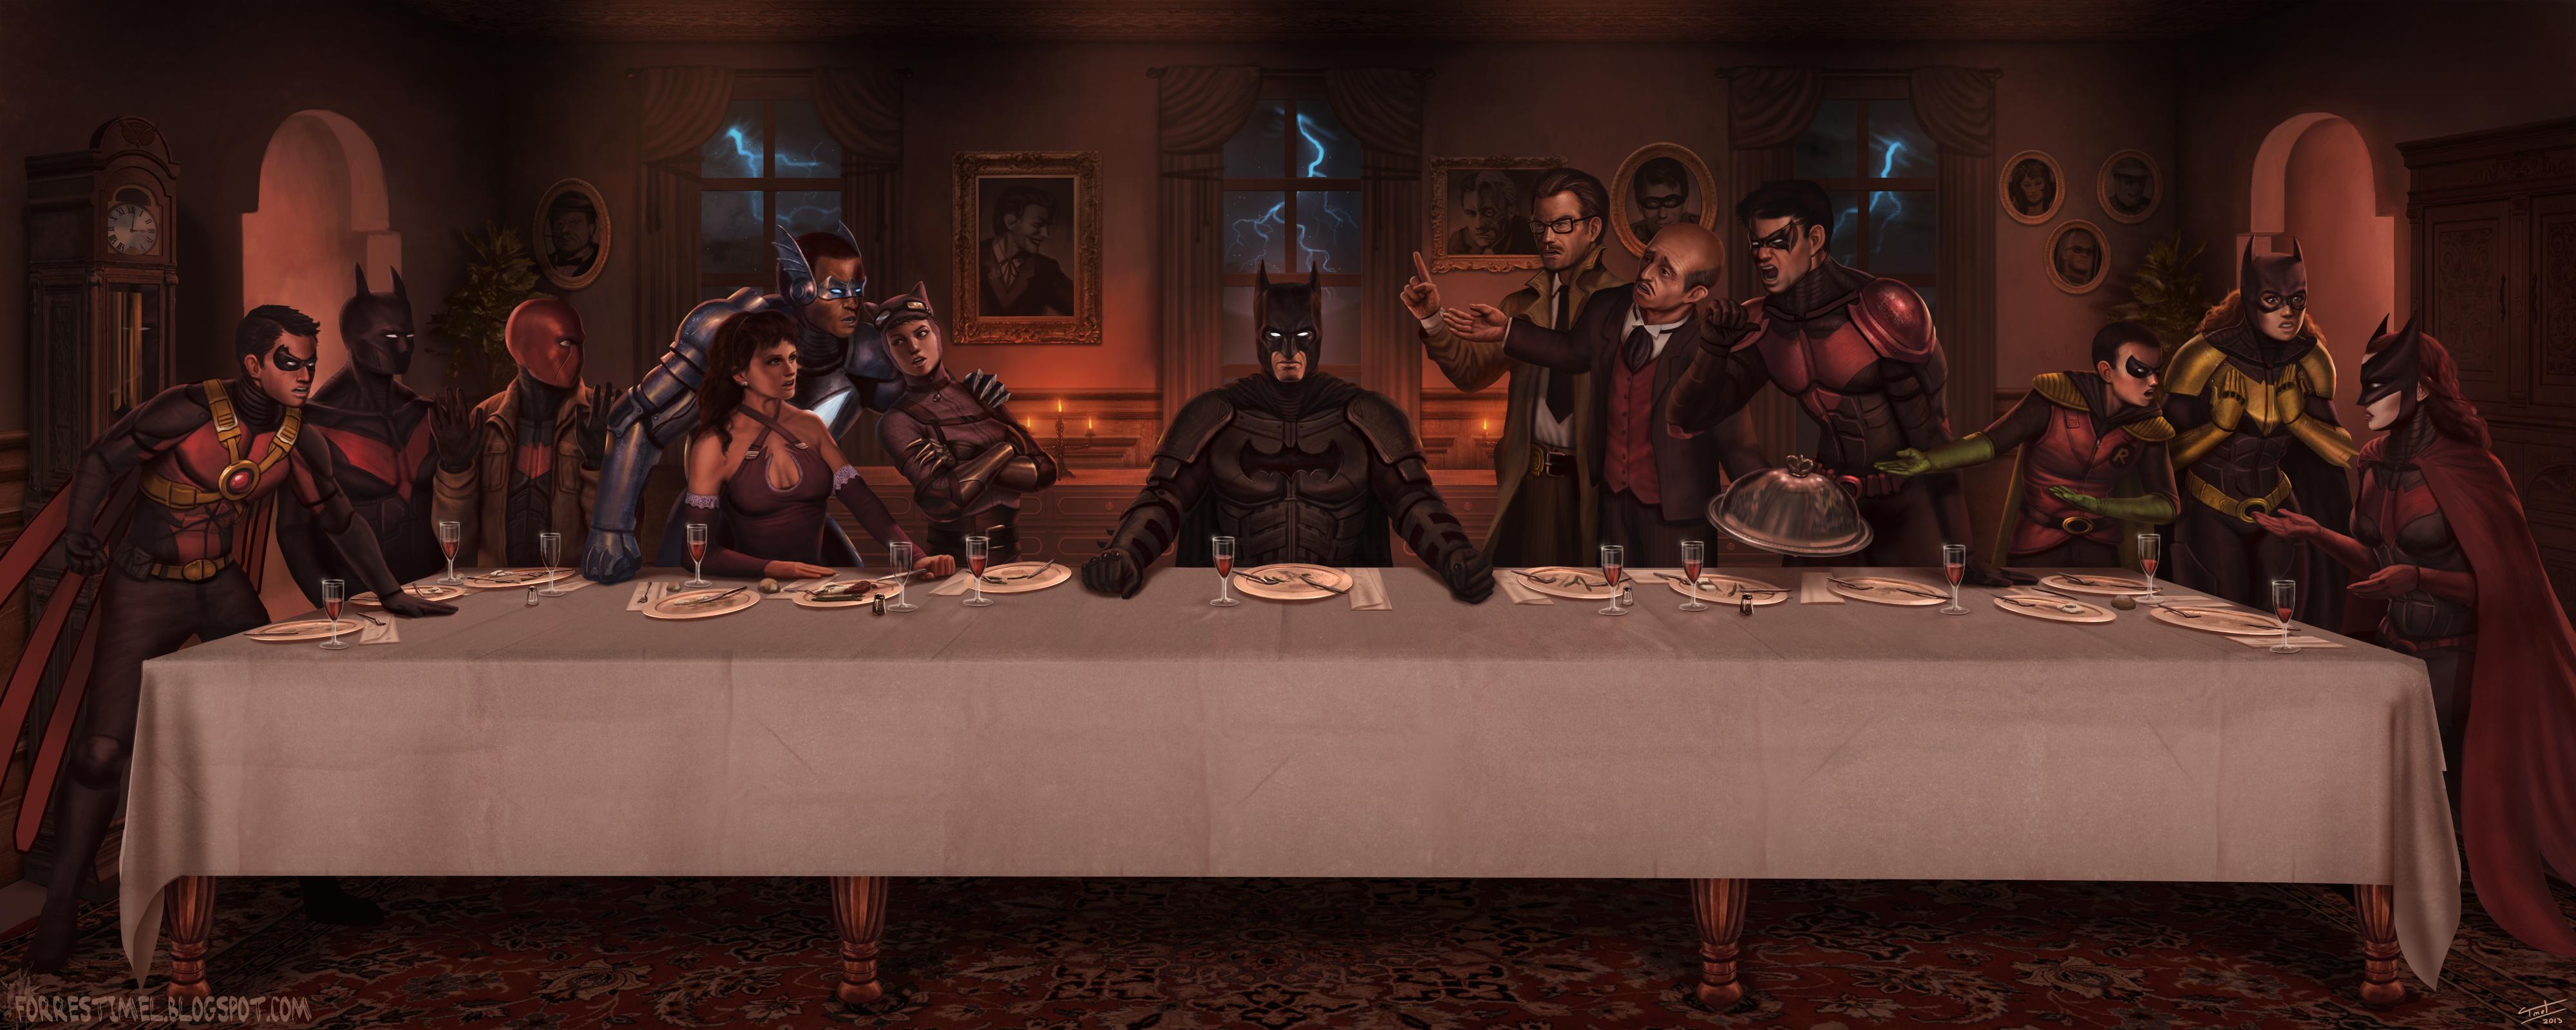 The Last Supper Of Batman Wallpaper